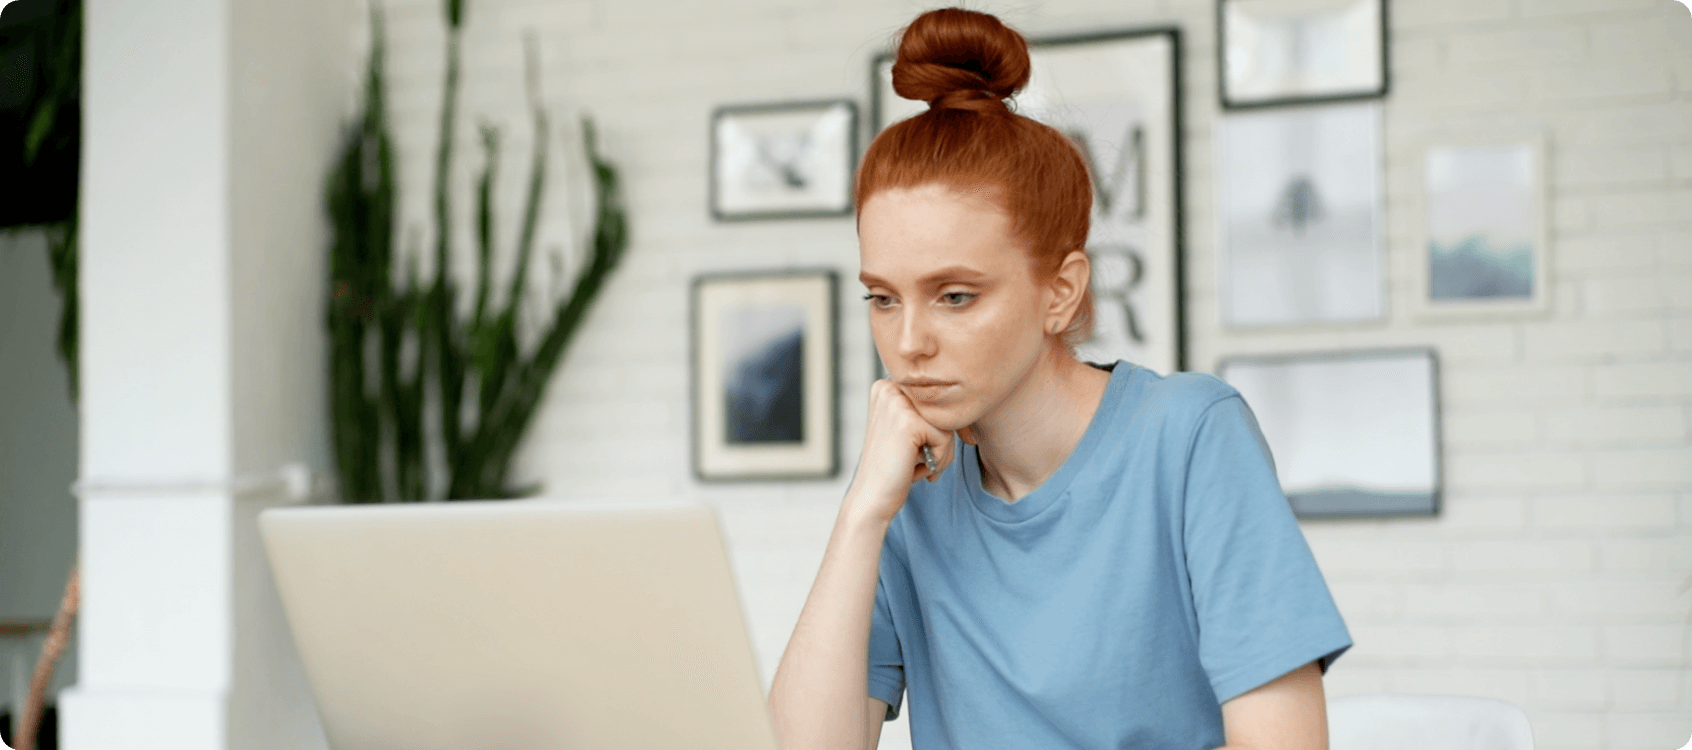 Woman thinking at computer.